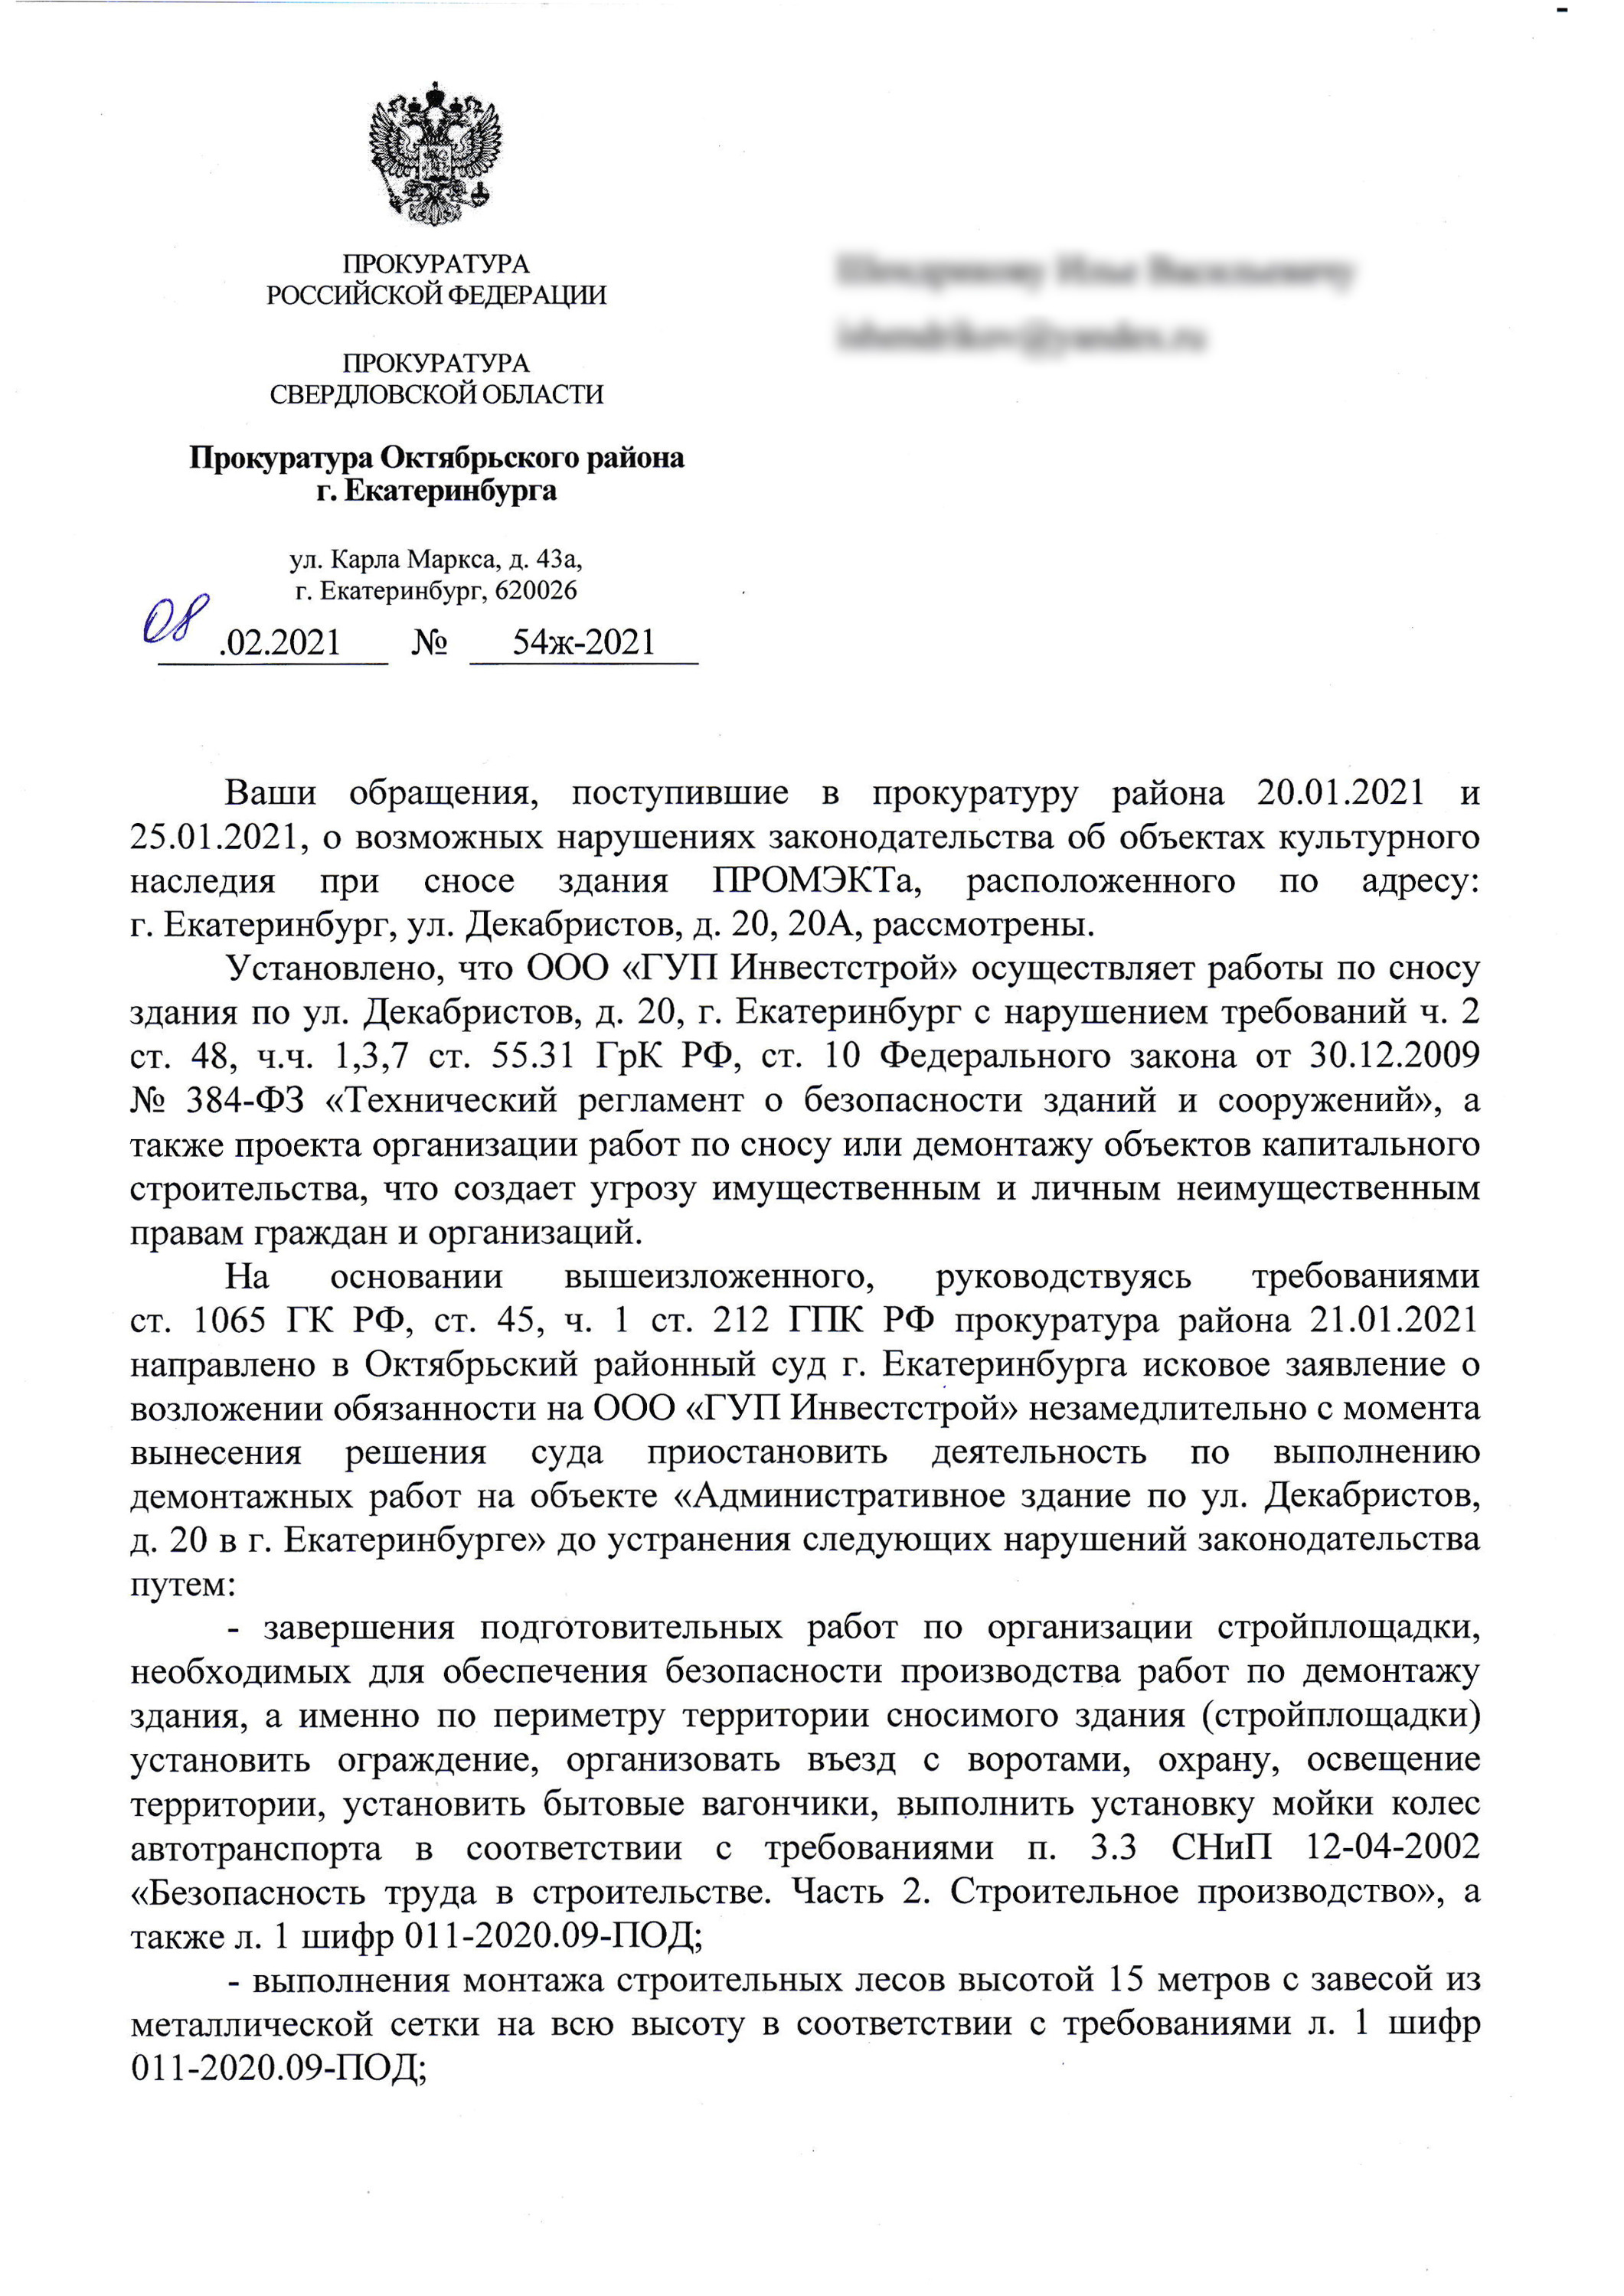 Официальный ответ прокуратуры Свердловской области о нарушениях, допущенных во время сноса здания ПРОМЭКТа 